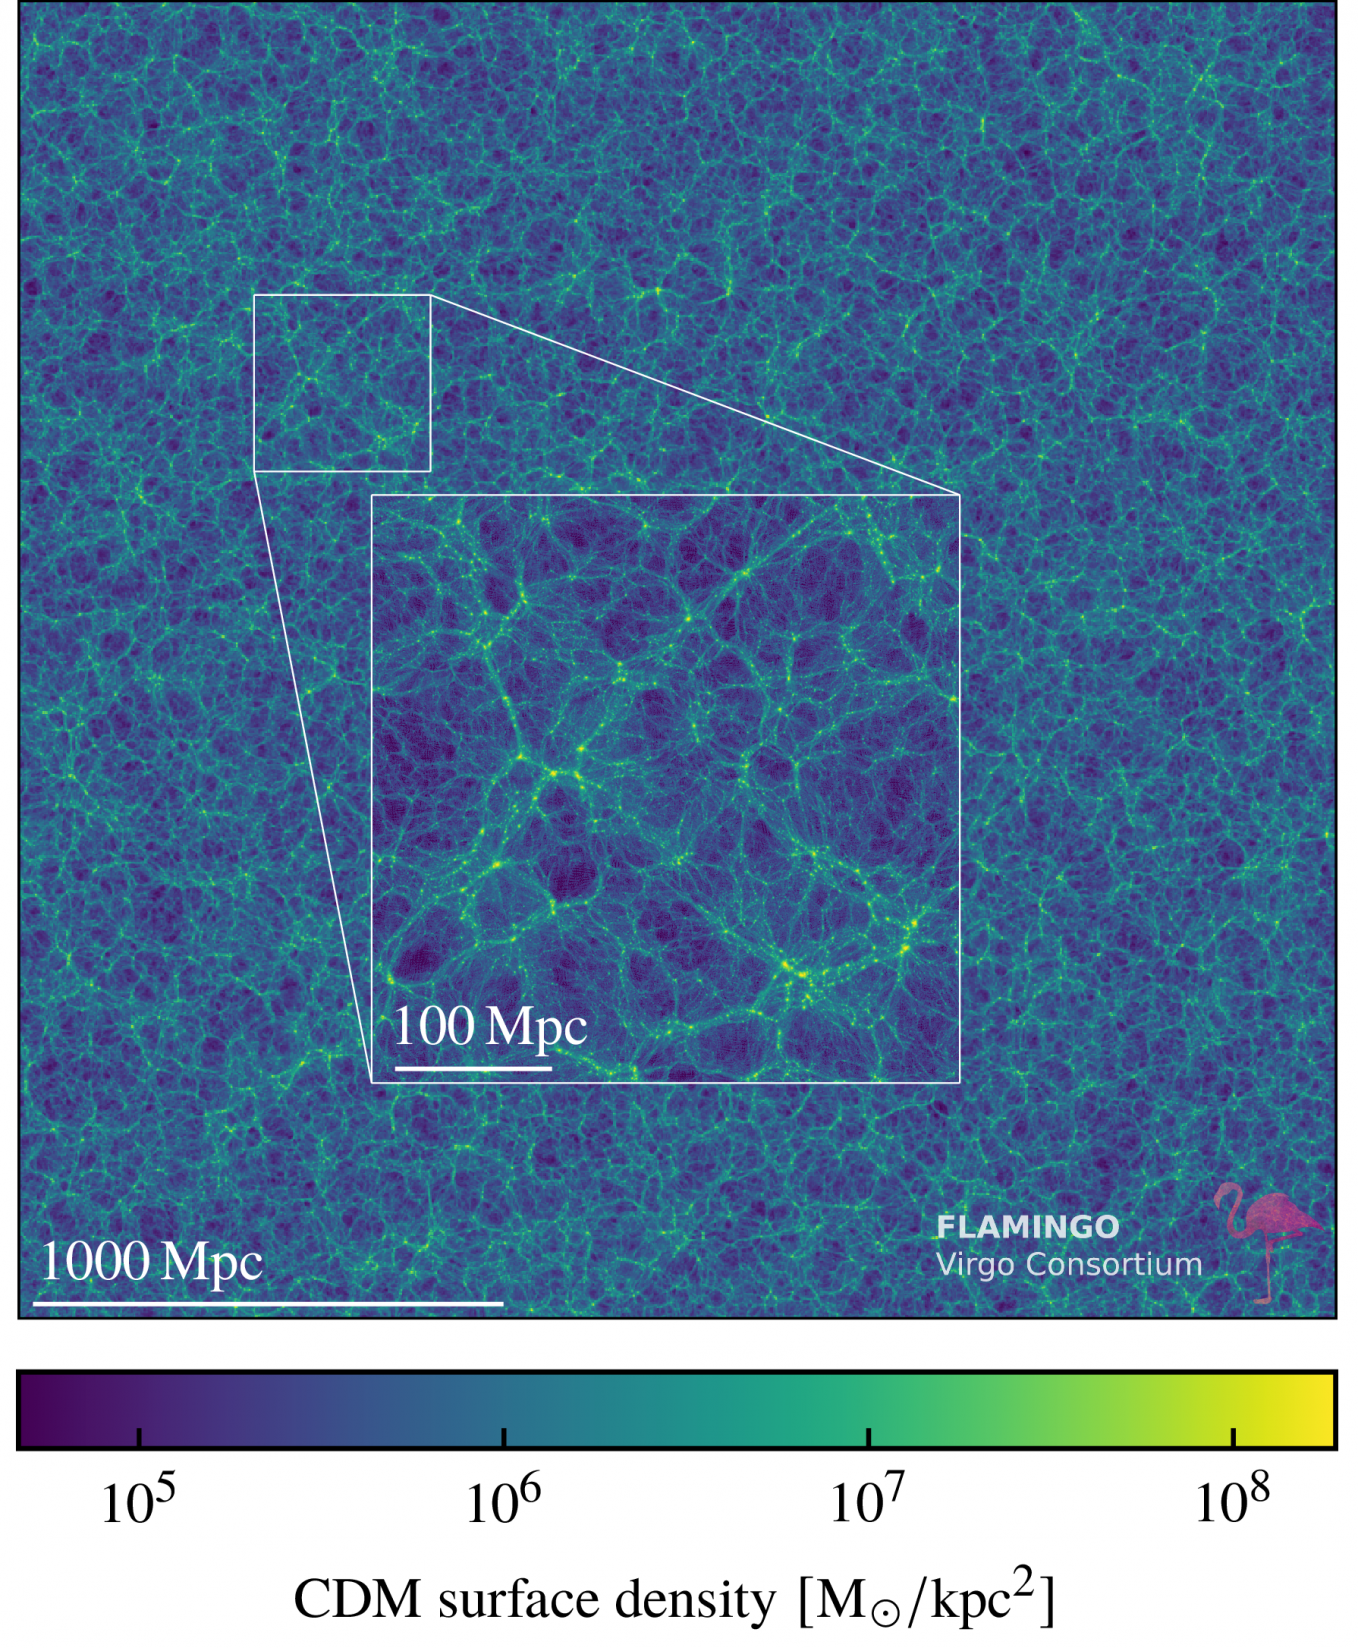 A FLAMINGO projekt szimulációja az univerzum nagy-skálájú struktúráiról, ami Kovács szerint jól mutatja a szimulált sötét anyag/galaxis eloszlást és az univerzum szerkezetének domináns elemeit: a voidokat, klasztereket és szálakat